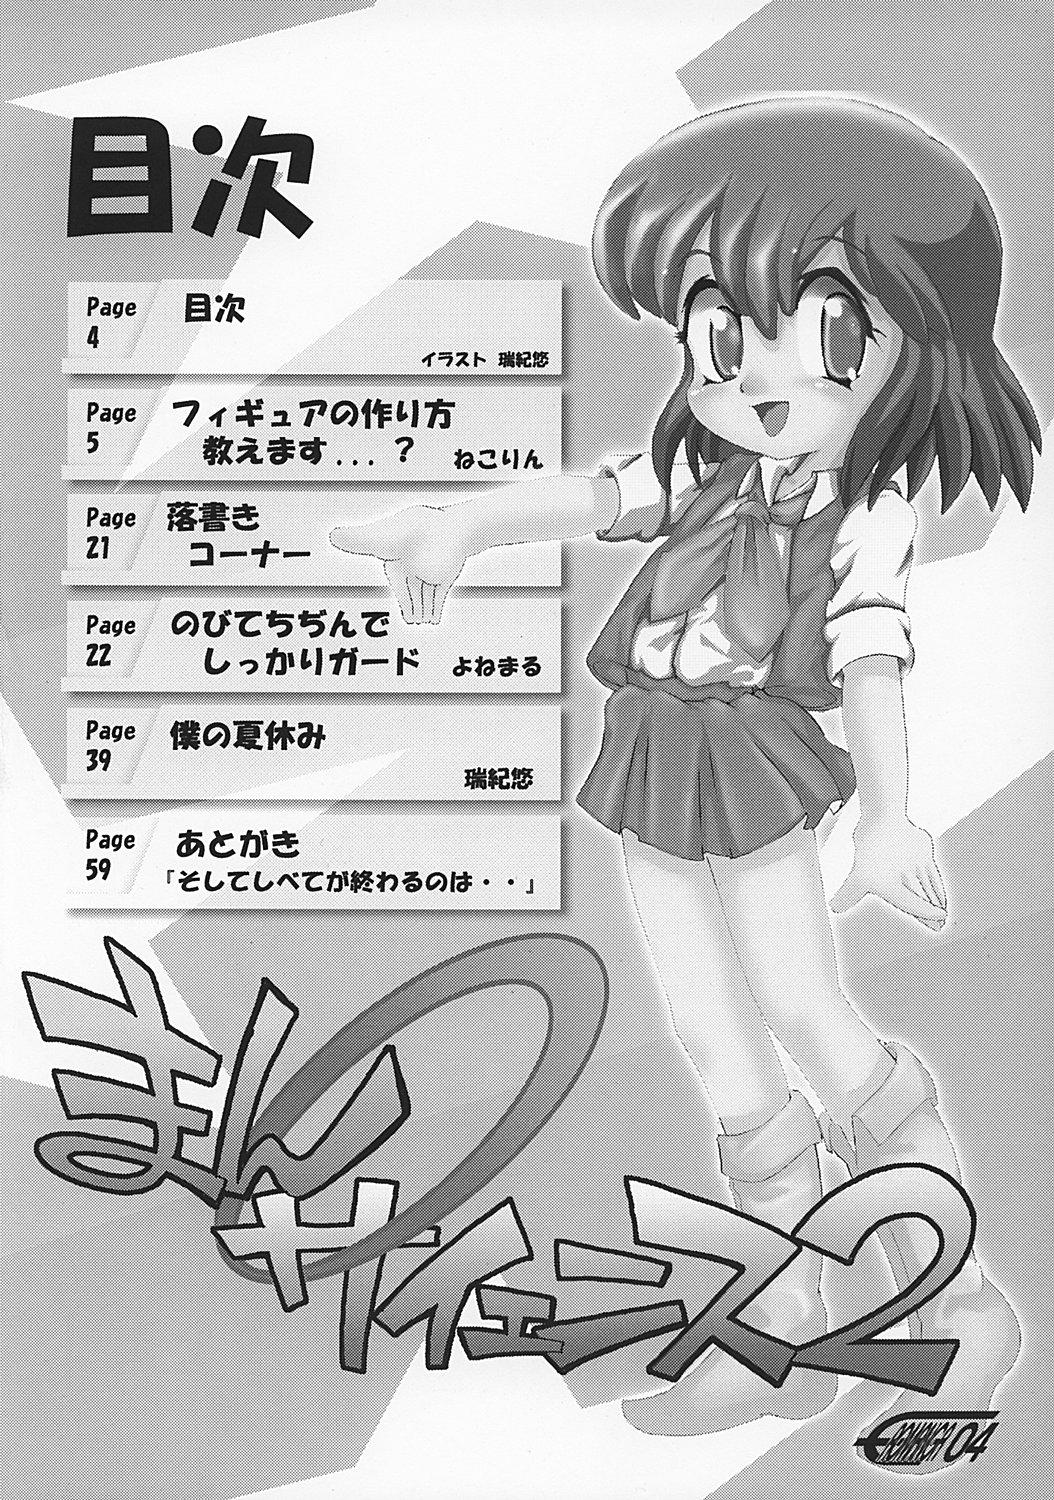 Scandal Manga Science 2 - Onnanoko no Himitsu Gay Smoking - Picture 3